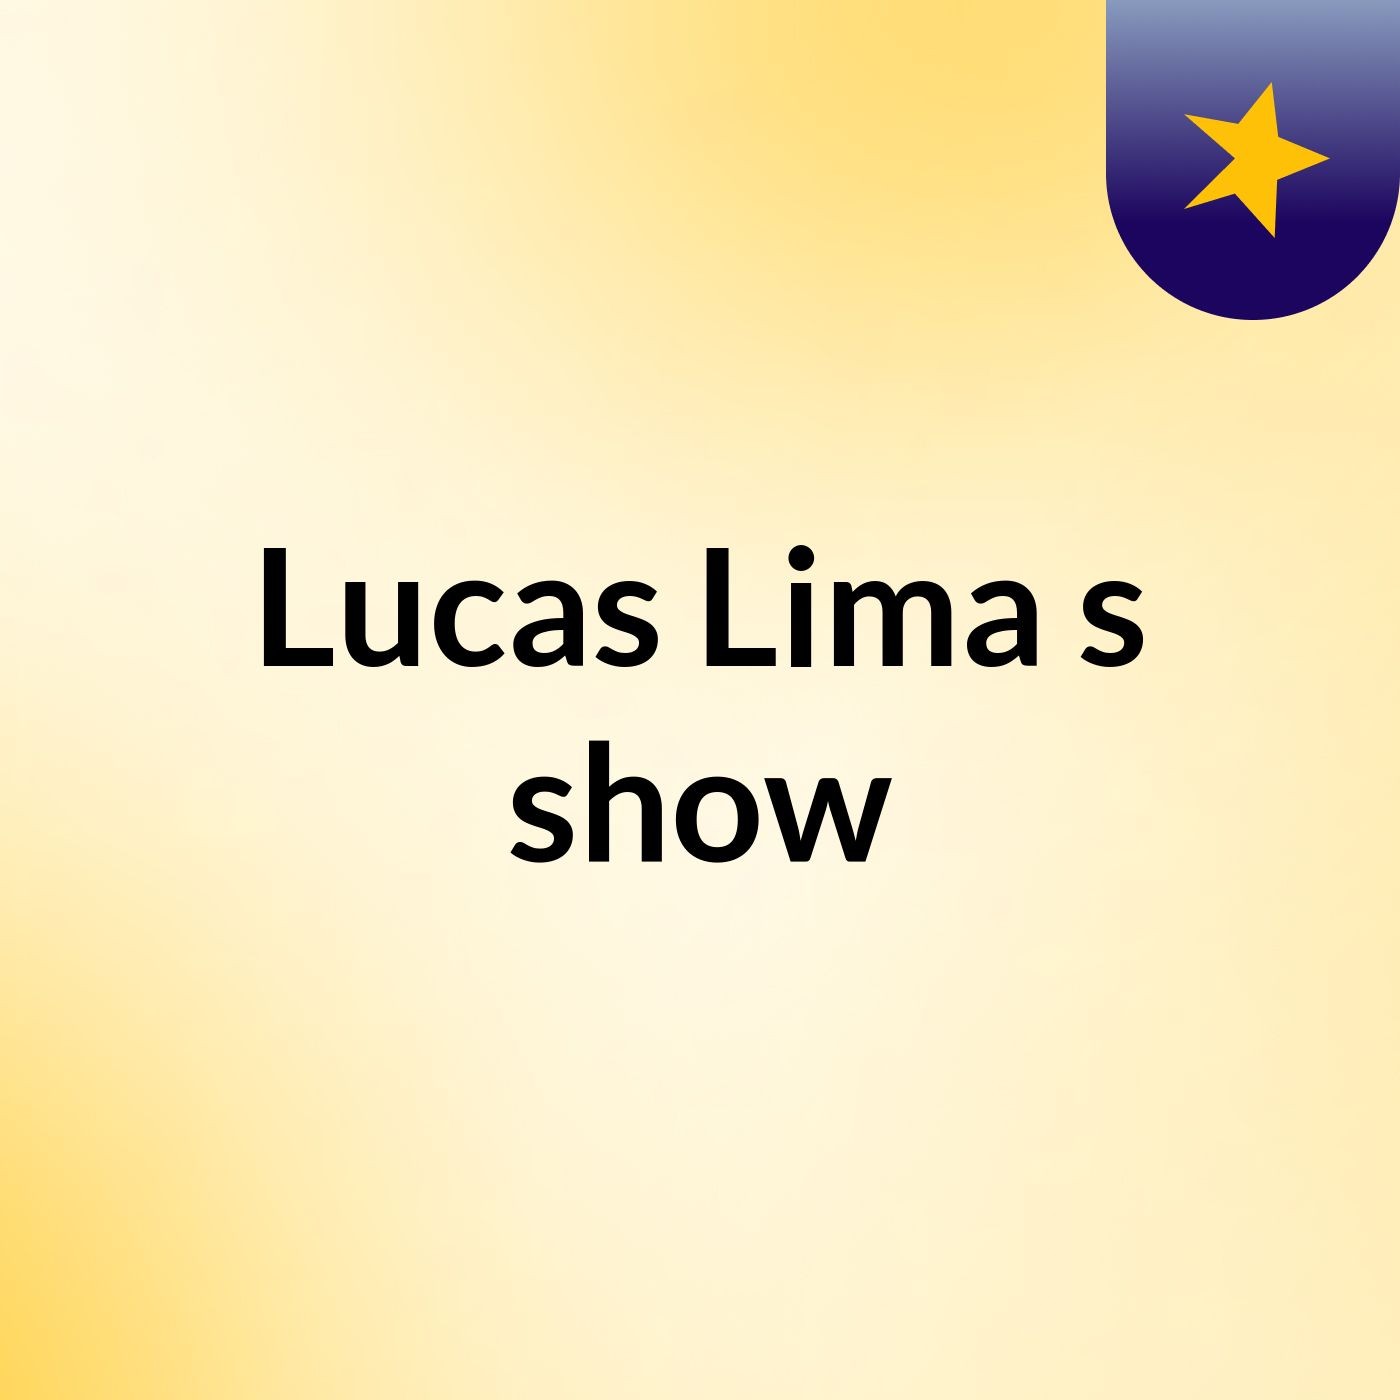 Lucas Lima's show